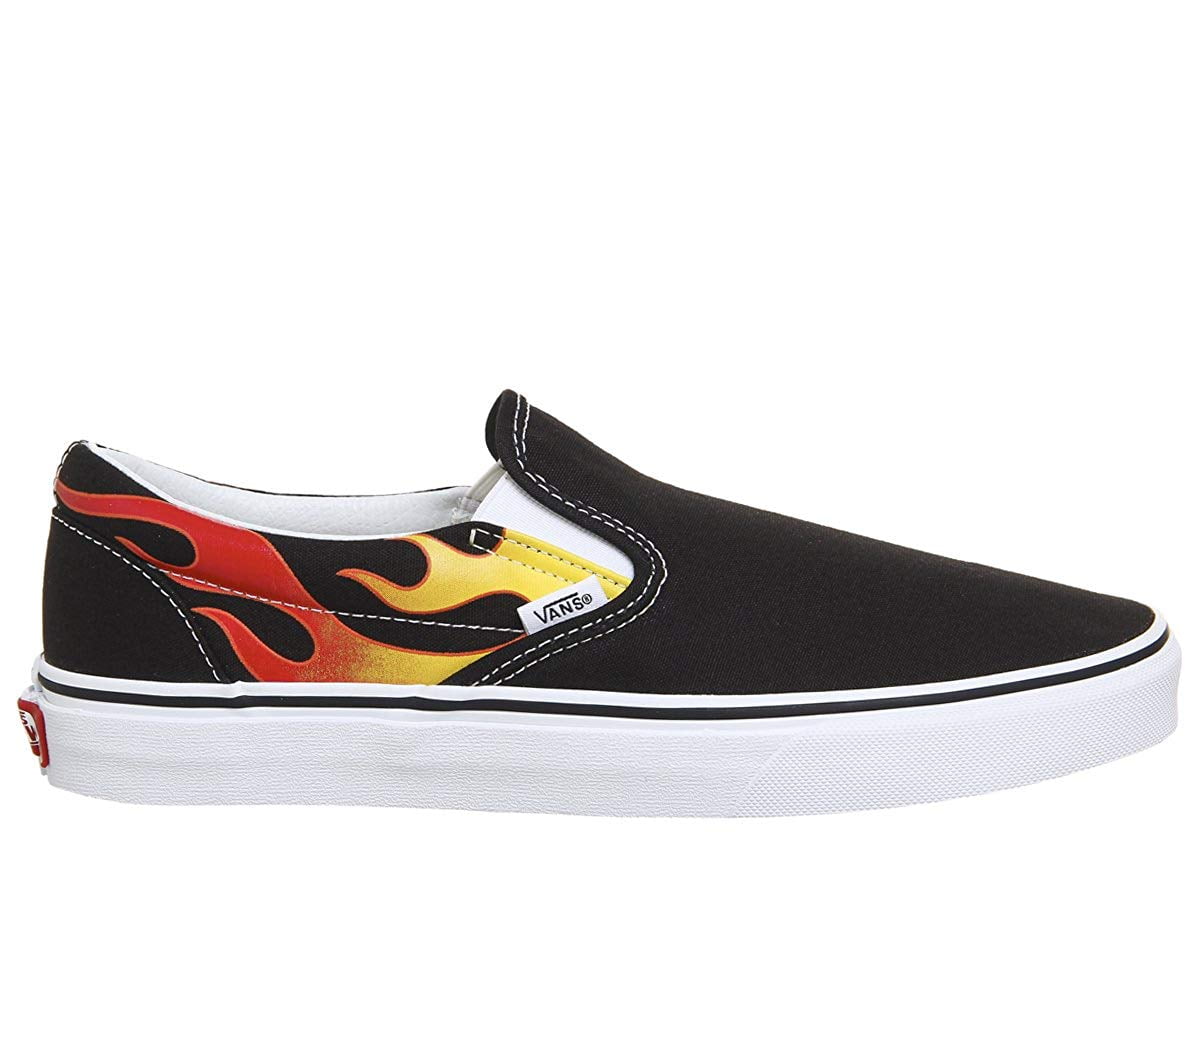 Vans Classic Slip On Flame Black/True White Men's Skate Shoes Size 11.5 ...